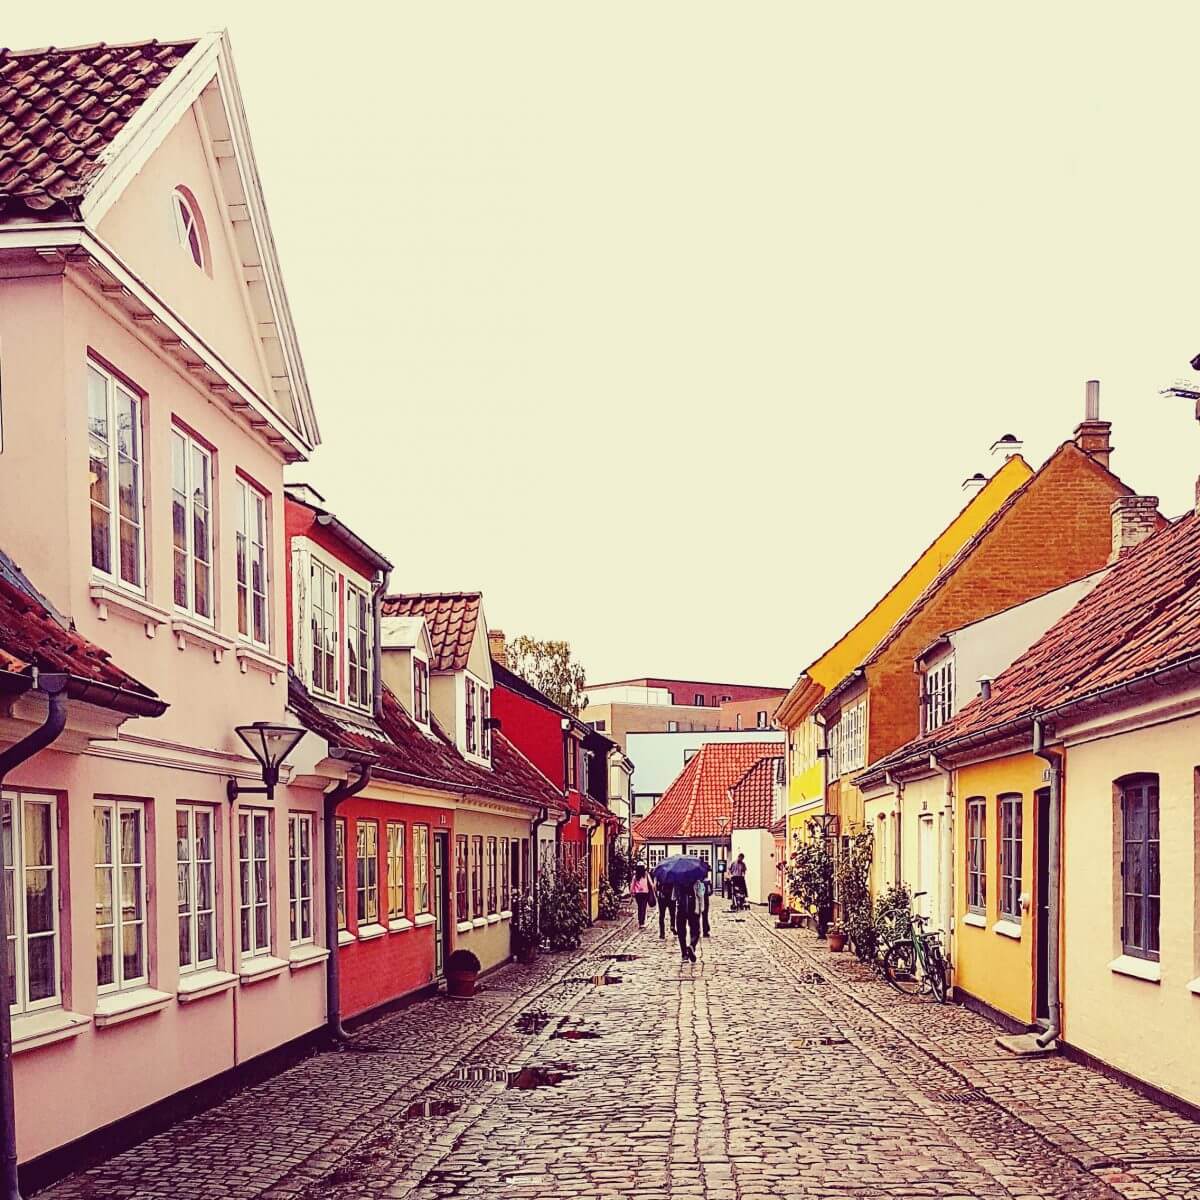 Vakantie met kids: sprookjesachtig Funen in Denemarken - moderne stad Odense met historie van Hans Andersen